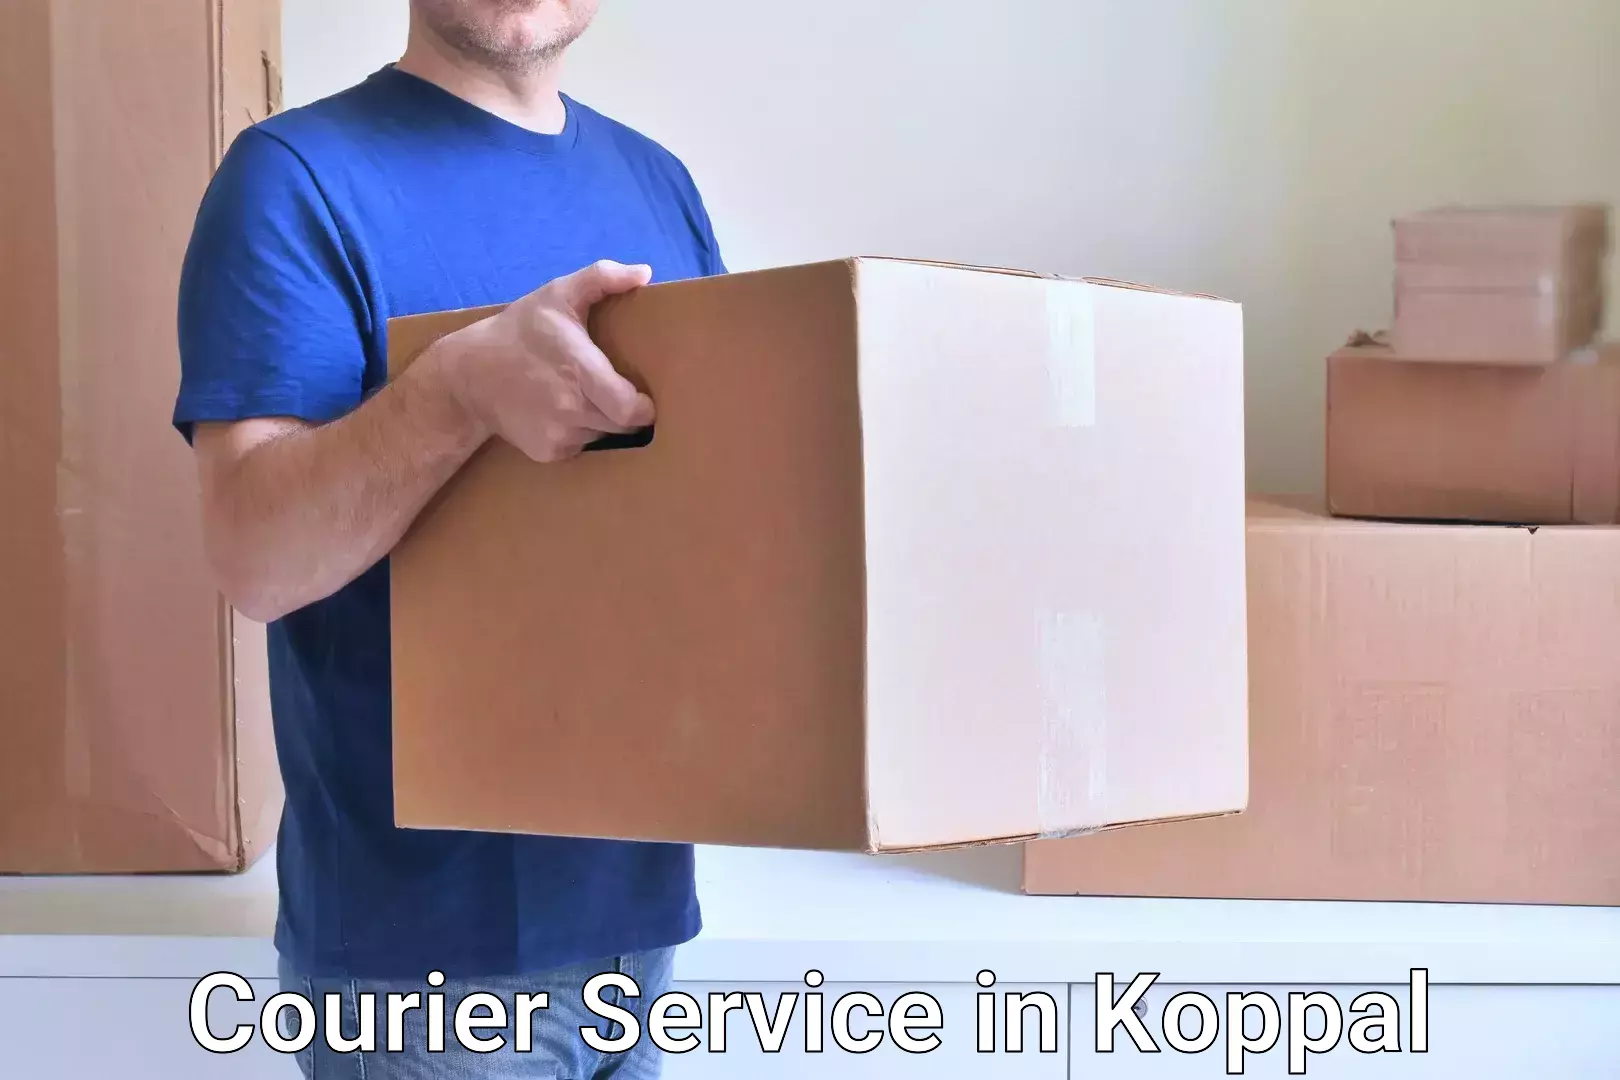 Courier service efficiency in Koppal